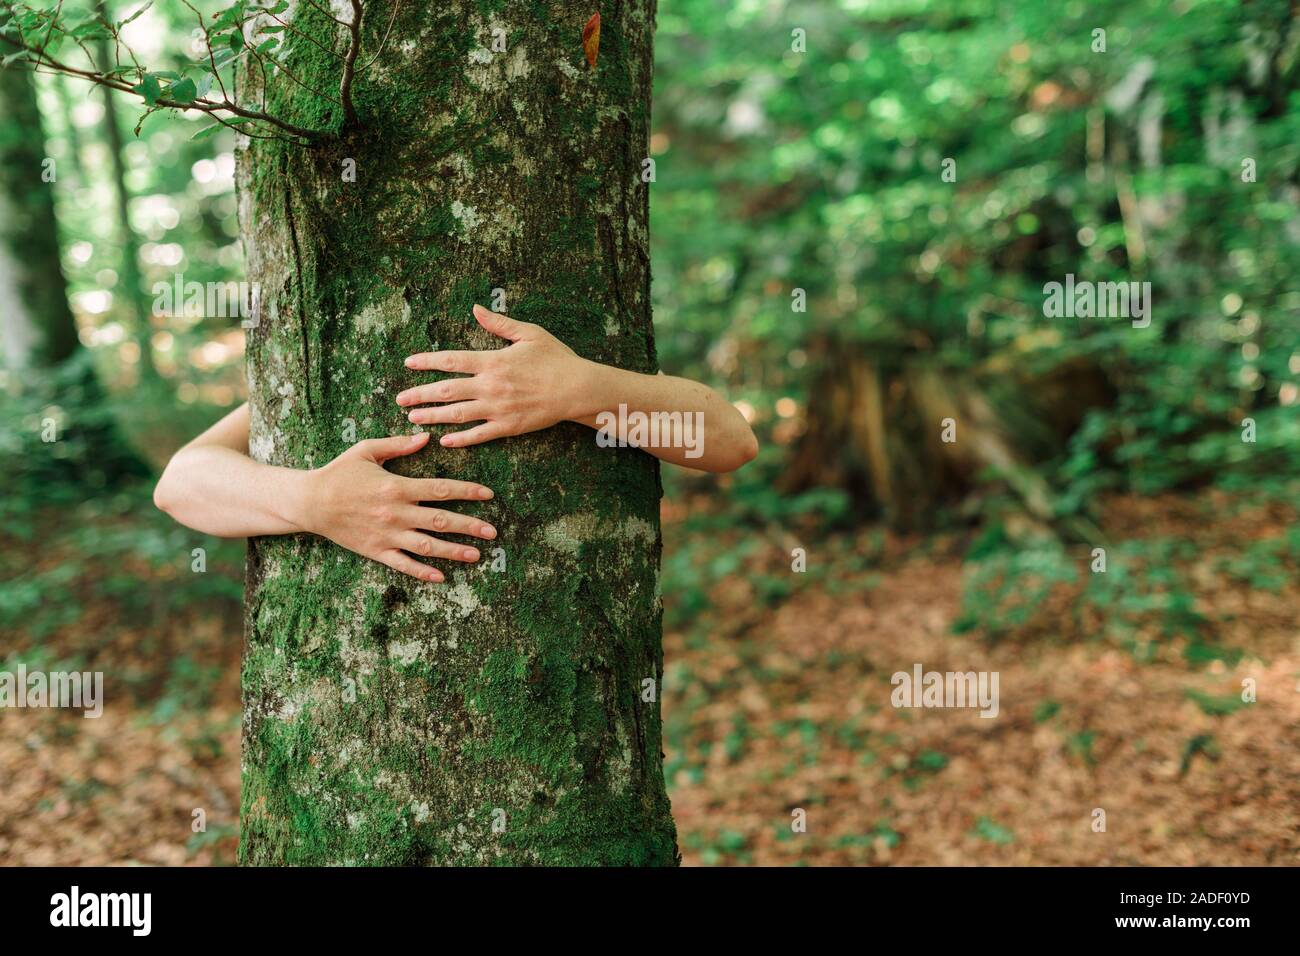 Arbre généalogique écologiste hugger est tronc bois forêt en serrant, femme bras autour de l'arbre, selective focus Banque D'Images